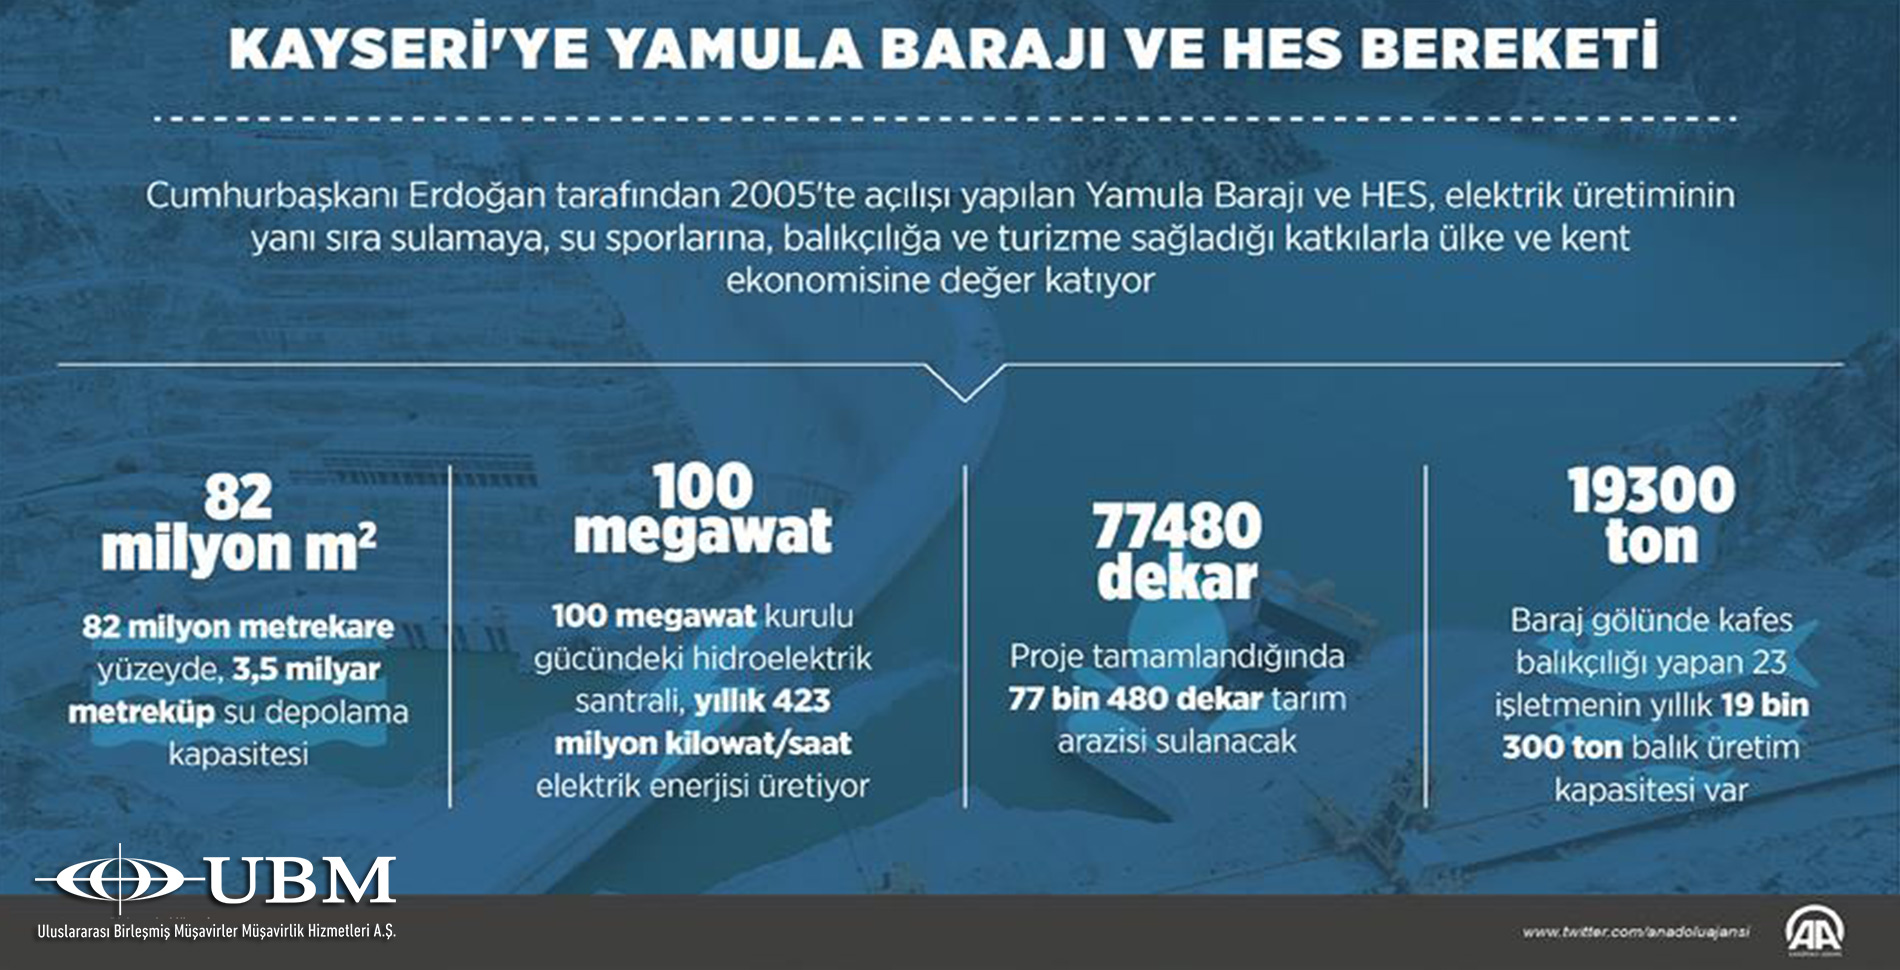 Kayseri'ye Yamula Barajı ve HES bereketi